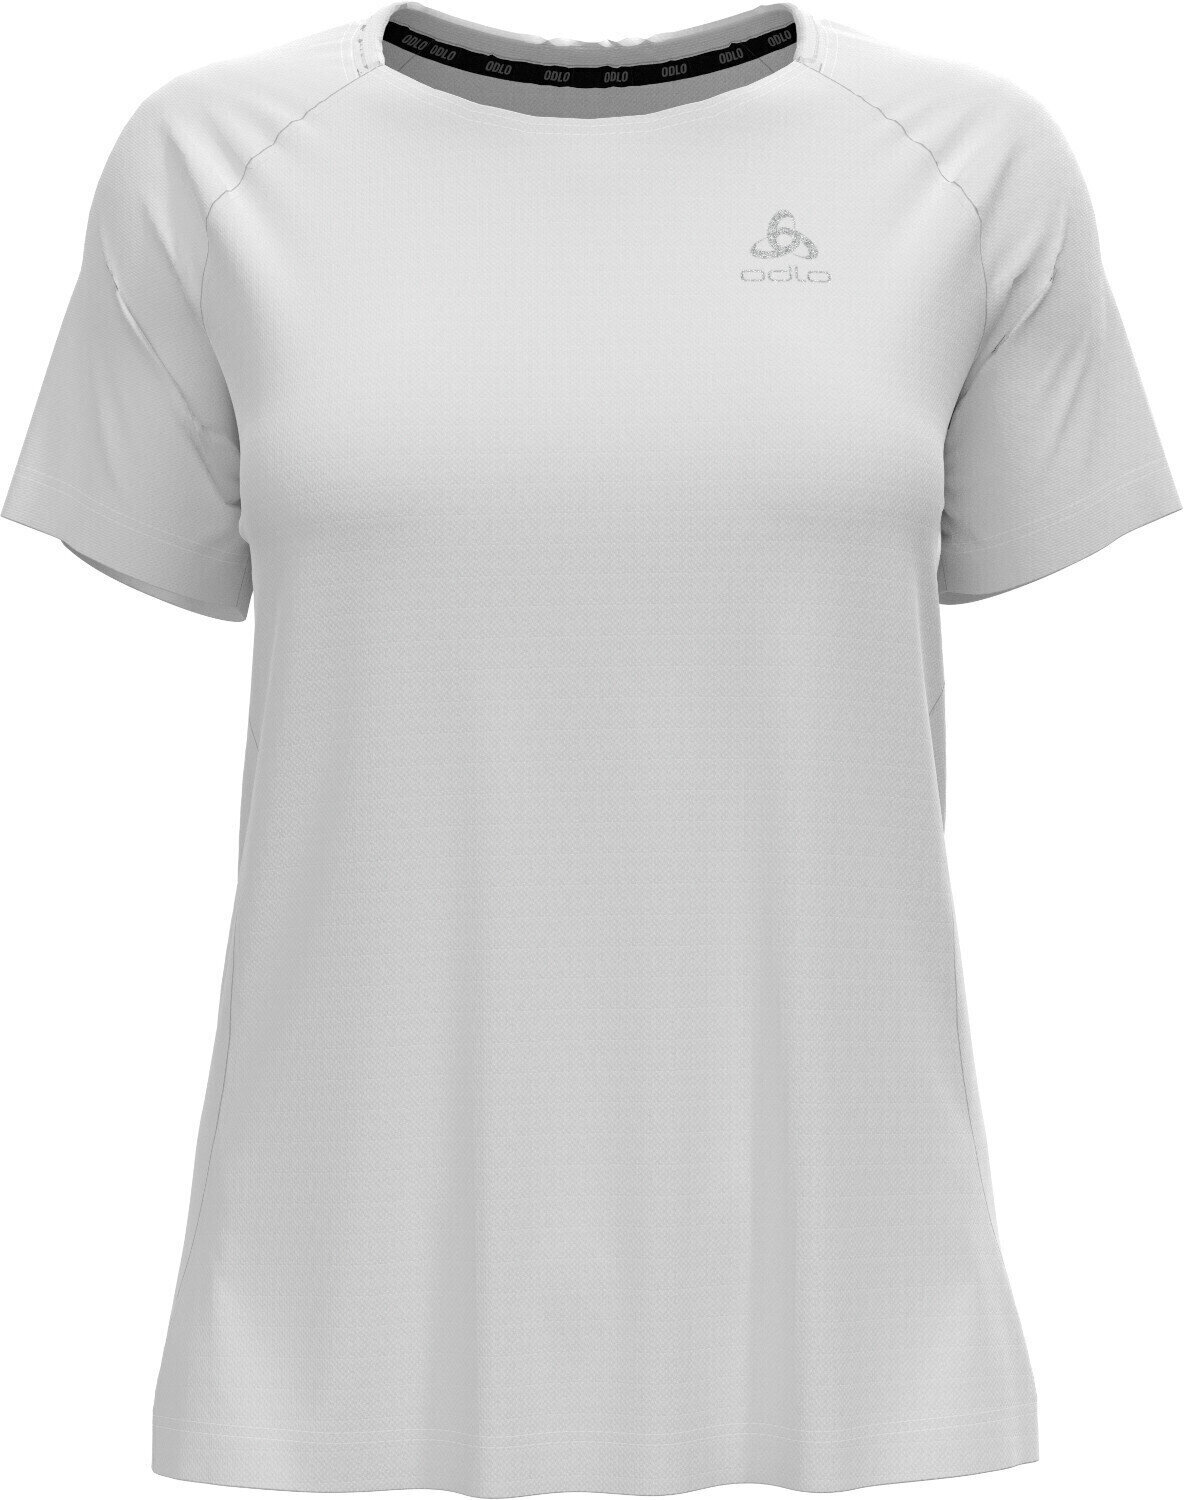 Tricou cu mânecă scurtă pentru alergare
 Odlo Essential T-Shirt White S Tricou cu mânecă scurtă pentru alergare